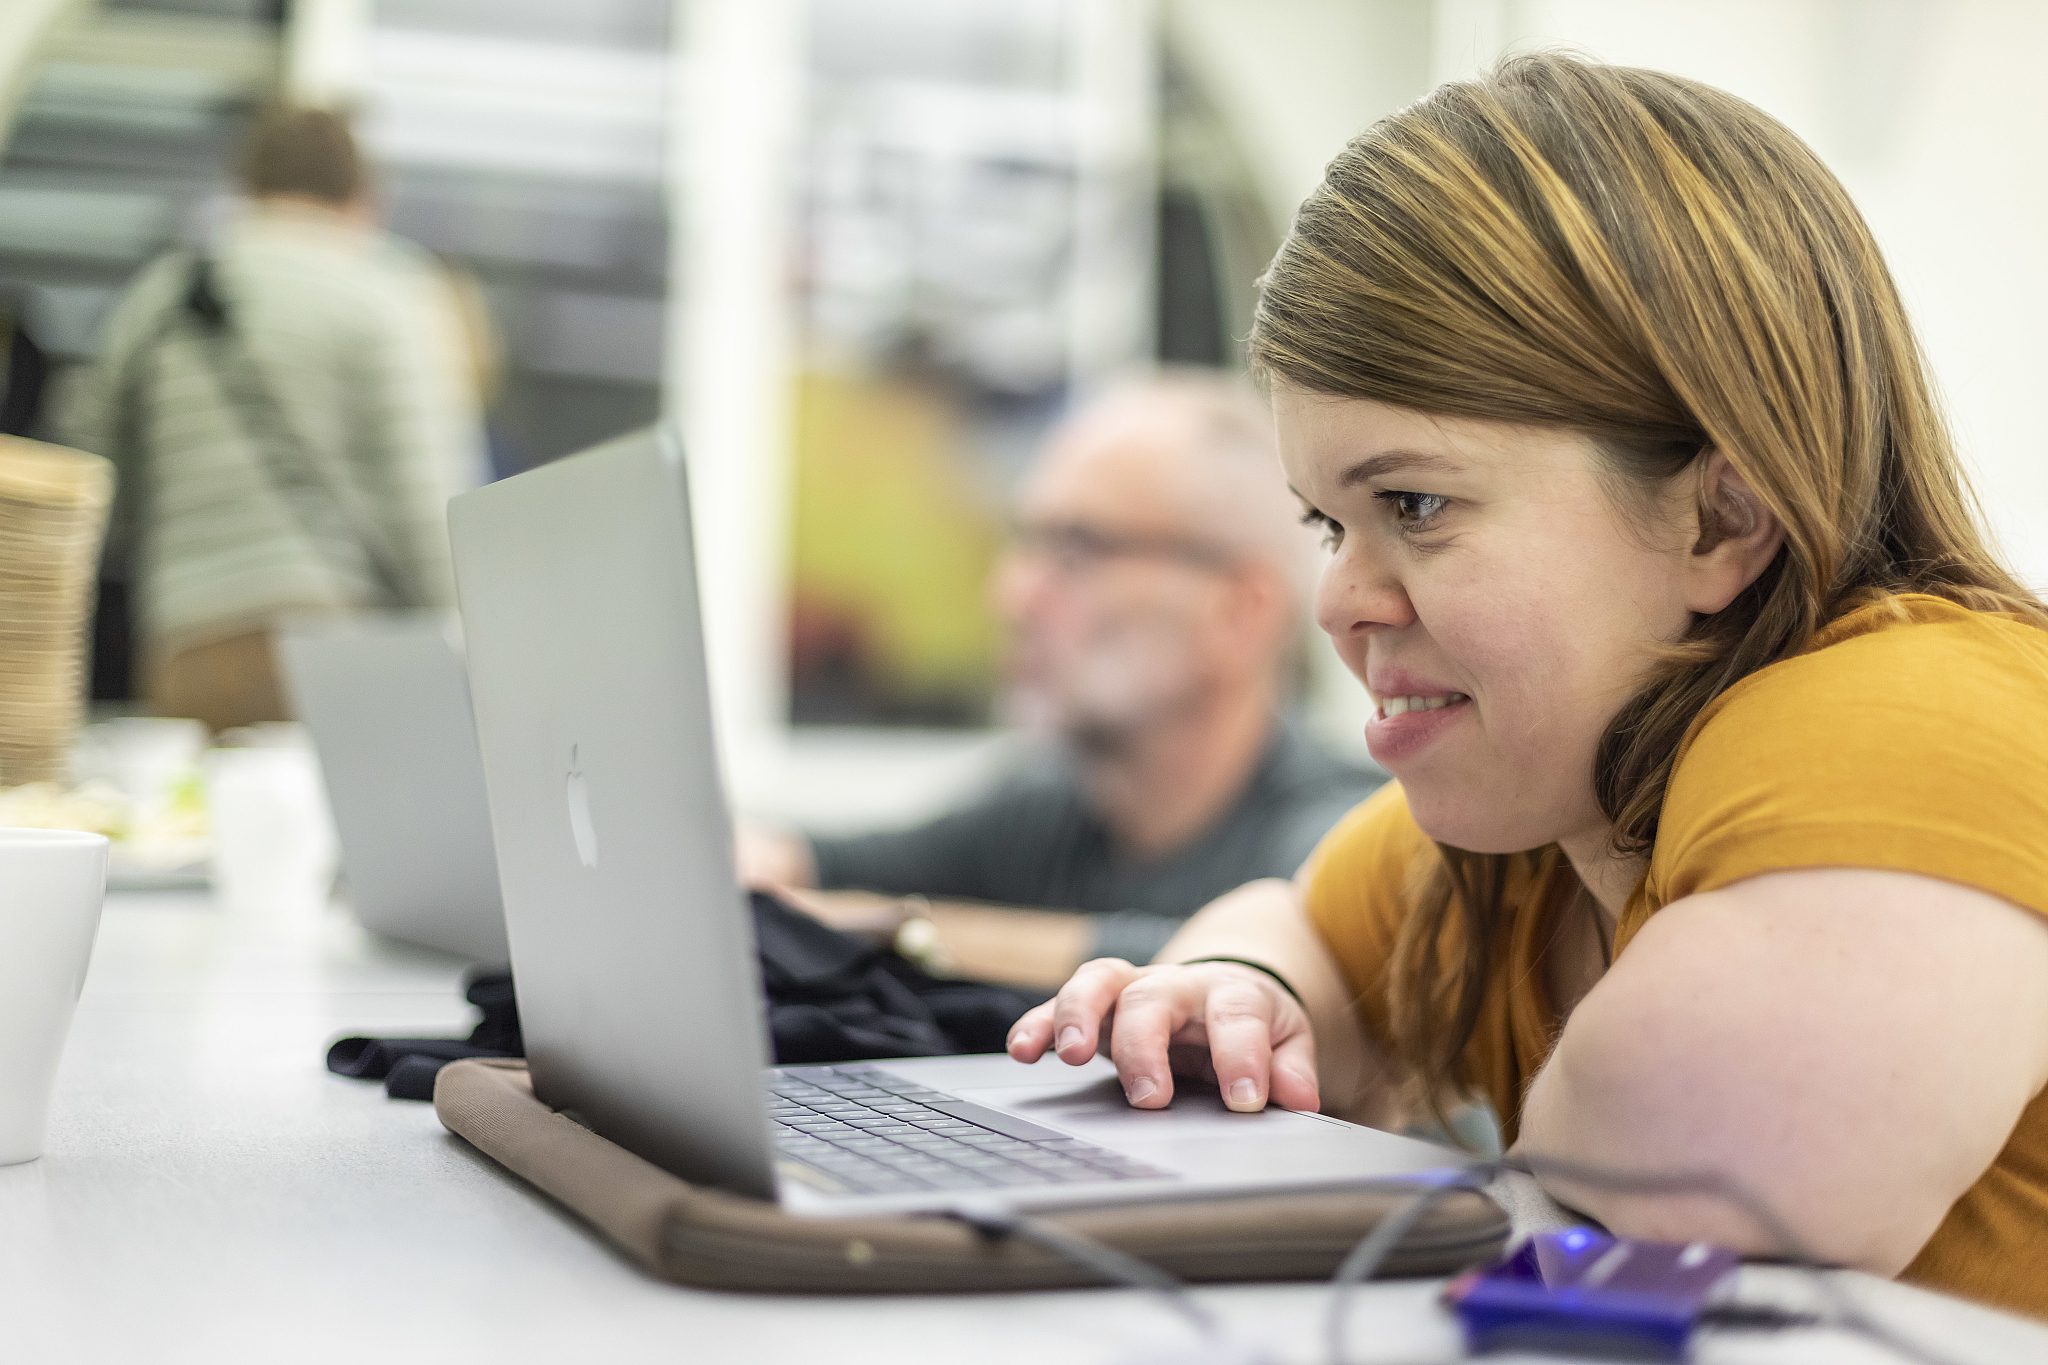 Foto von Teilnehmerin Workshop sitzt an Laptop, arbeitet, lächelt